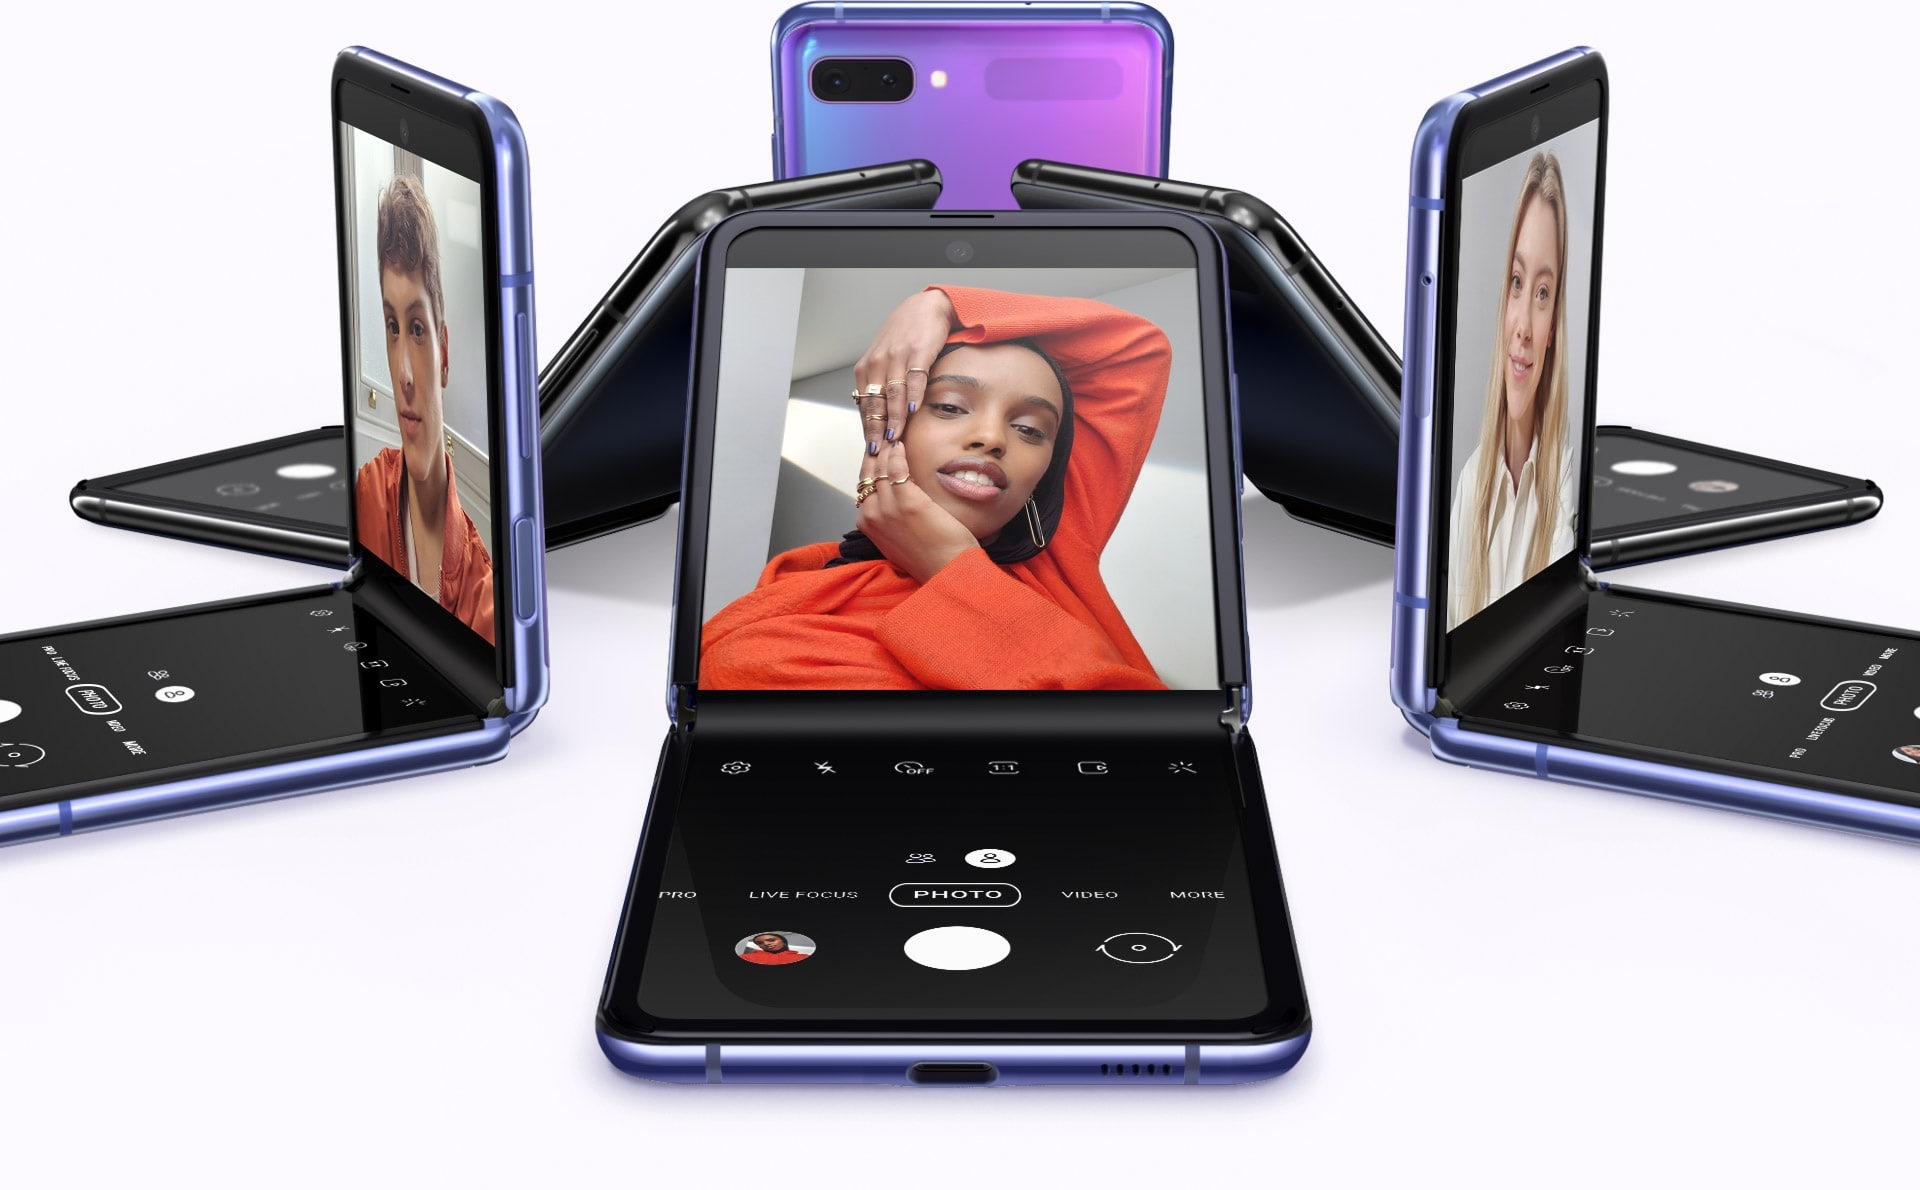 Šesť telefónov Galaxy Z Flip v prevedení Mirror Purple a Mirror Black v rôznych uhloch usporiadaných do kruhu. Jeden z nich má na obrazovke selfie muža, druhý selfie ženy a ďalší má inú selfie inej ženy 